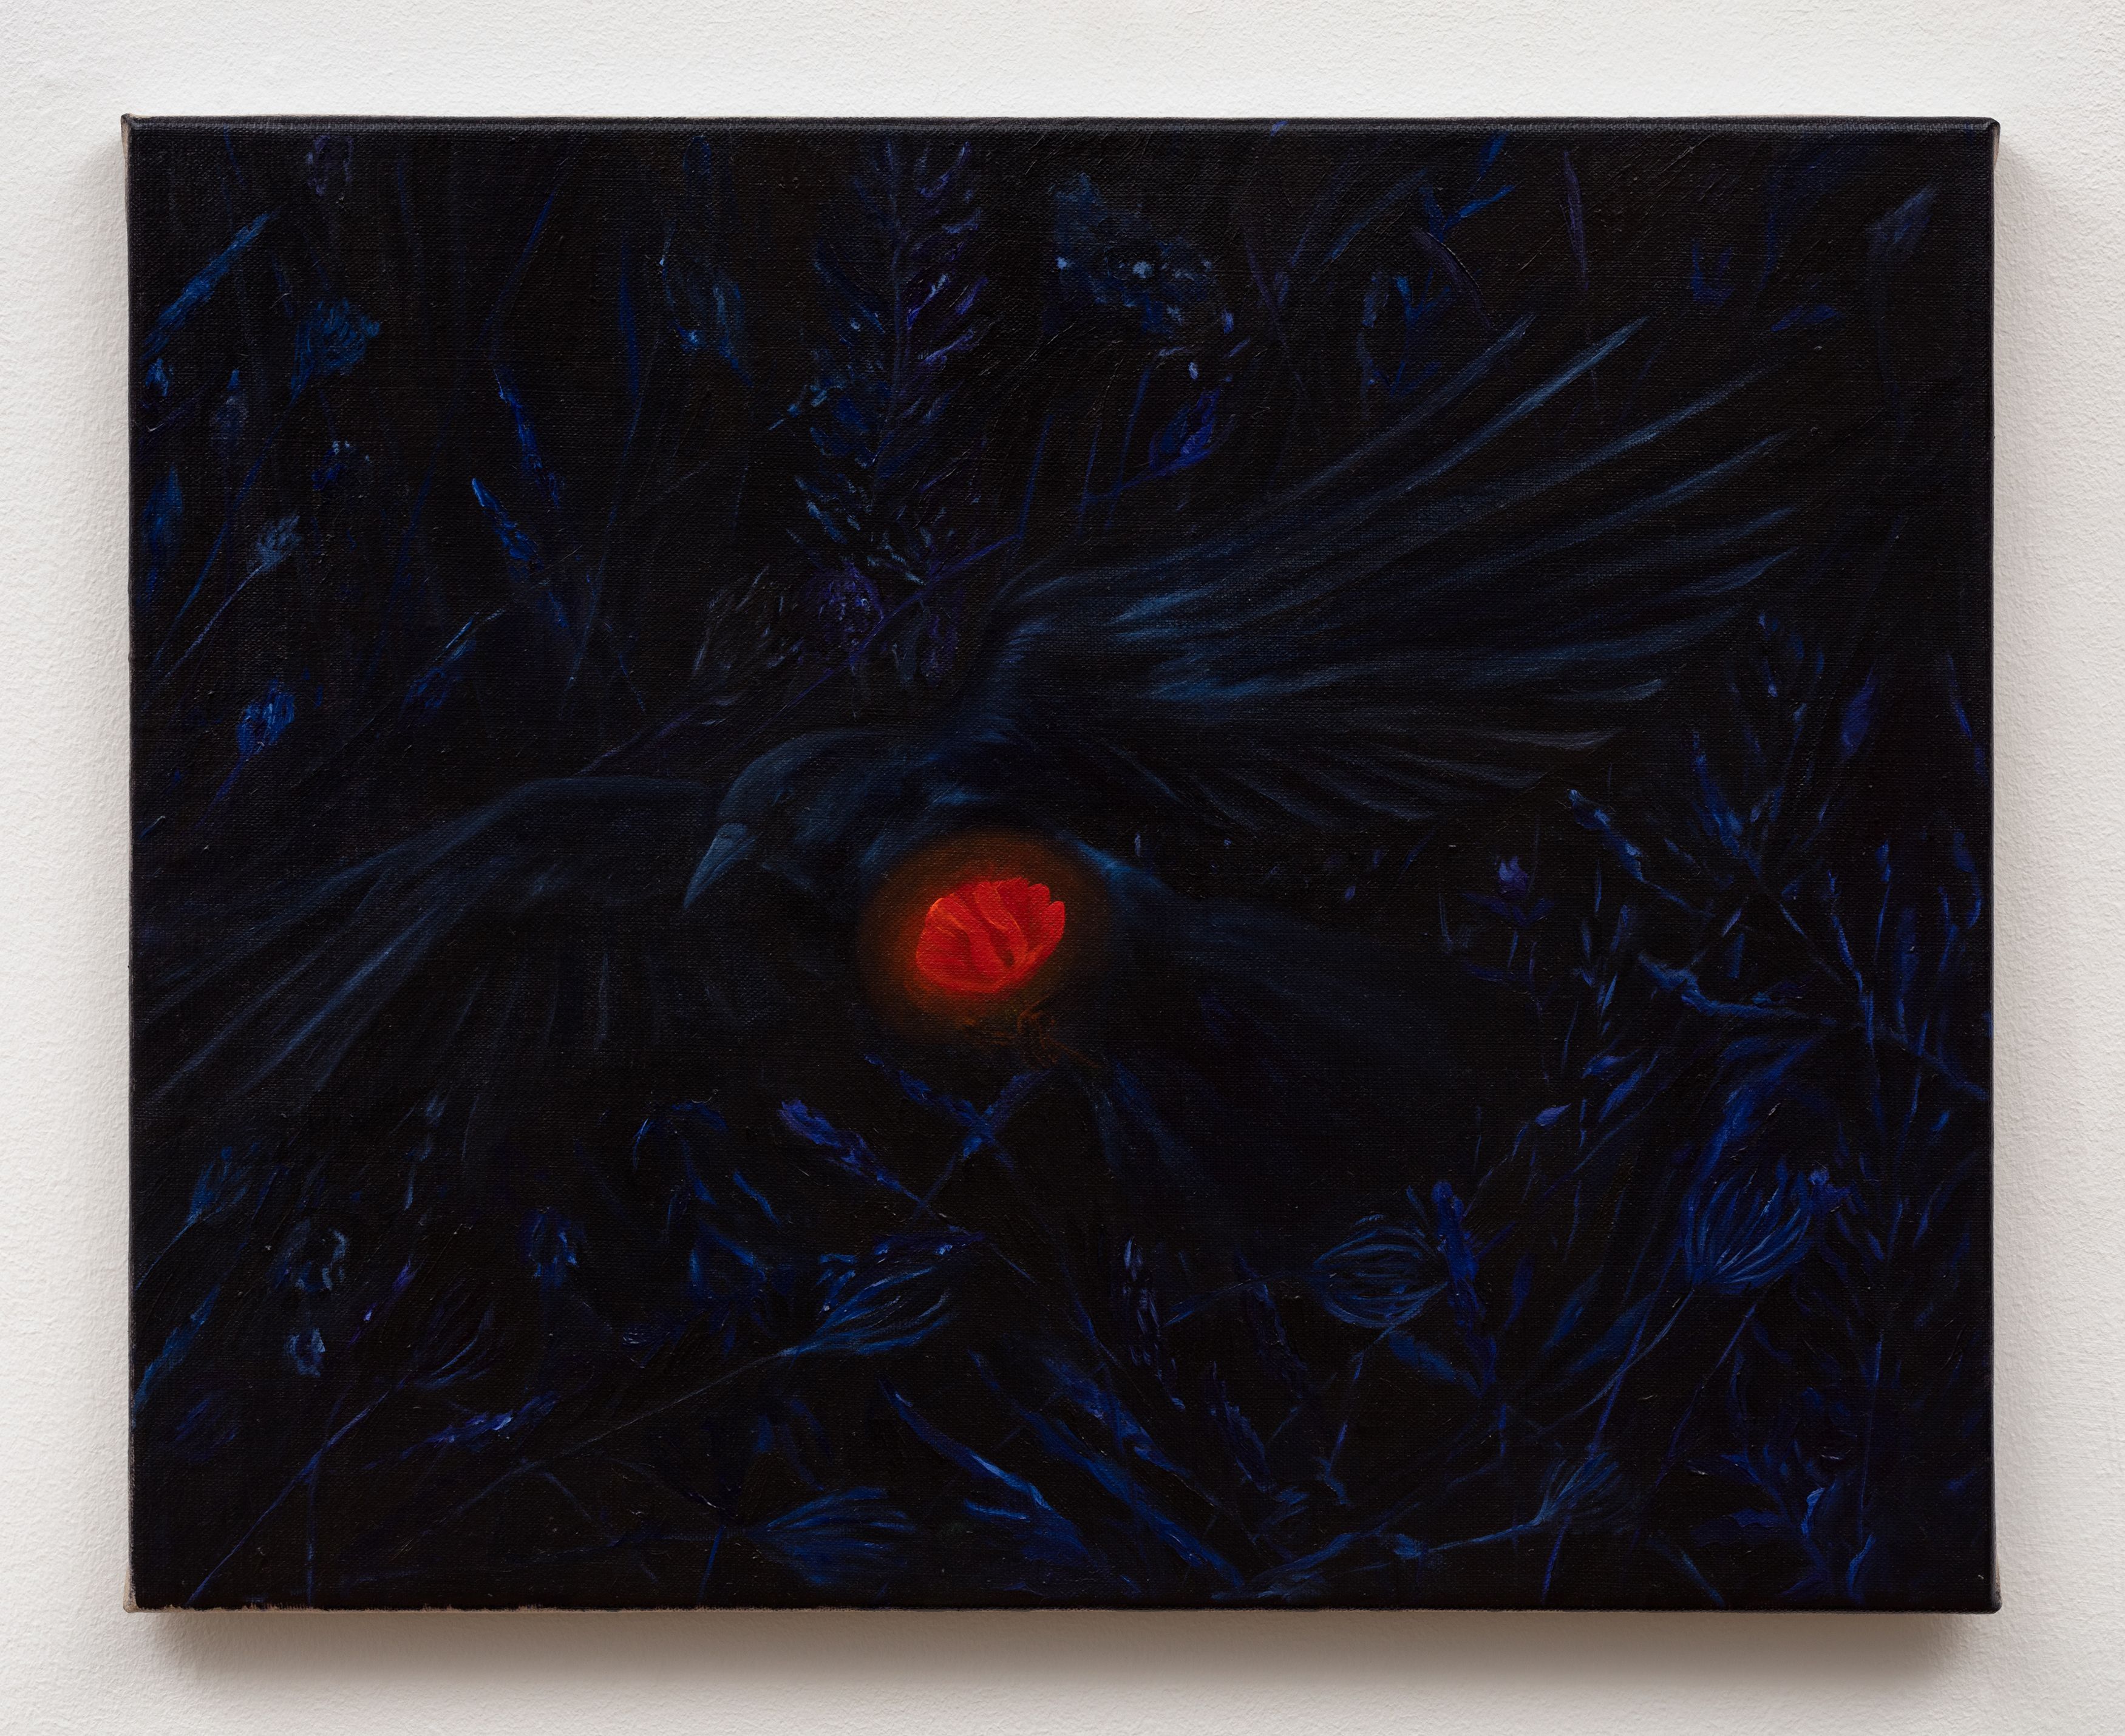 Srijon Chowdhury, Crow with a Poppy, 2020, oil on linen, 16 x 20 in. (40.64 x 50.8 cm)